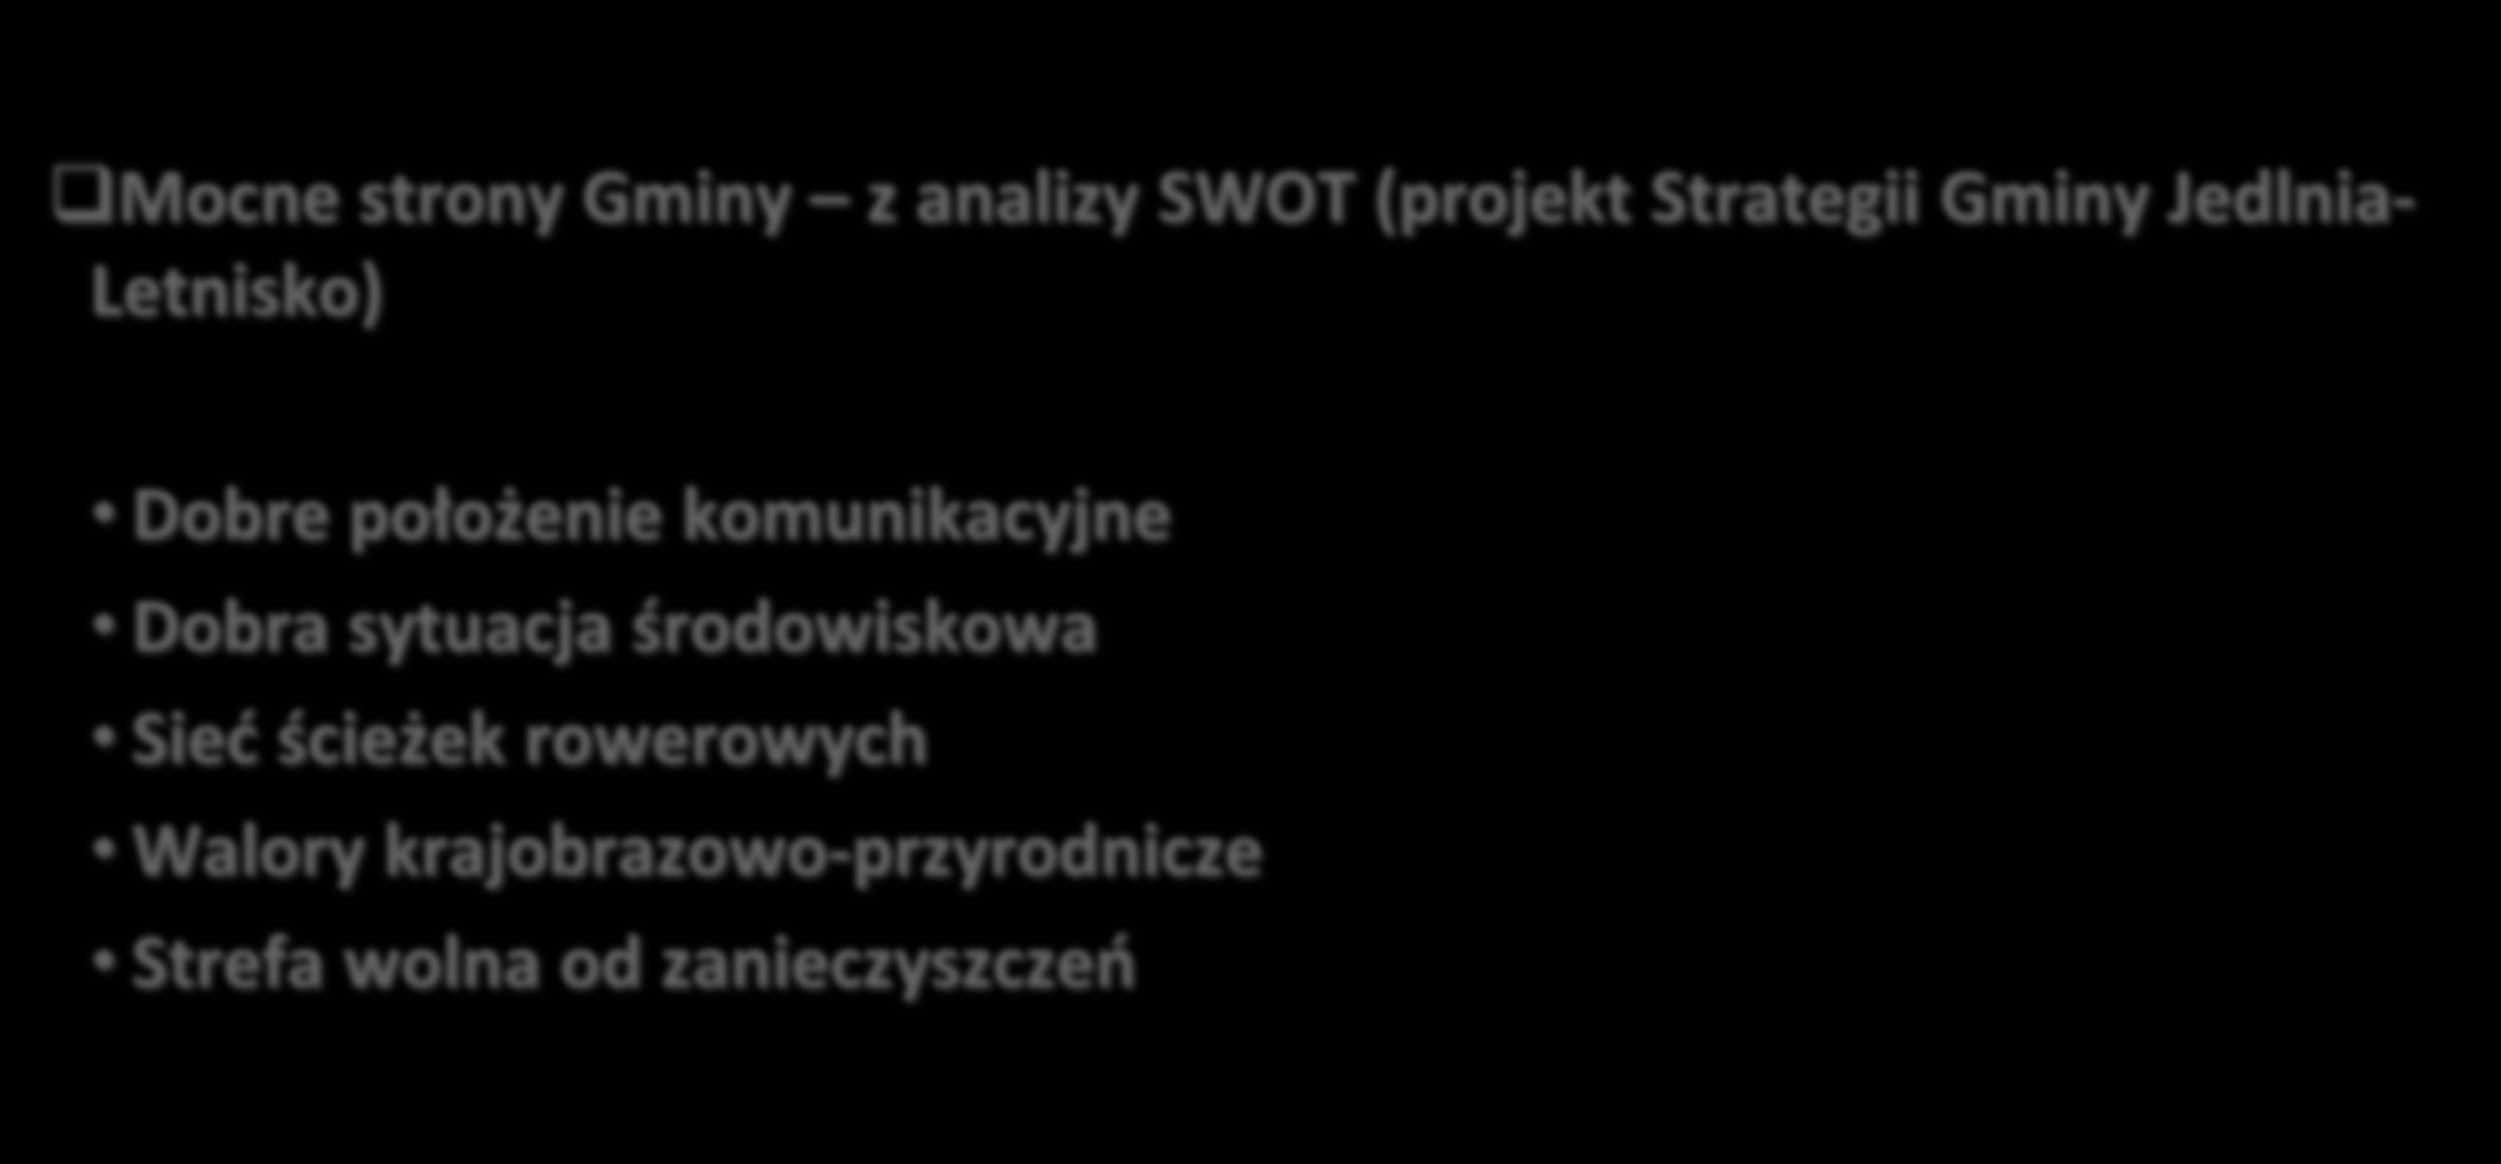 Mocne strony Gminy z analizy SWOT (projekt Strategii Gminy Jedlnia- Letnisko) Dobre położenie komunikacyjne